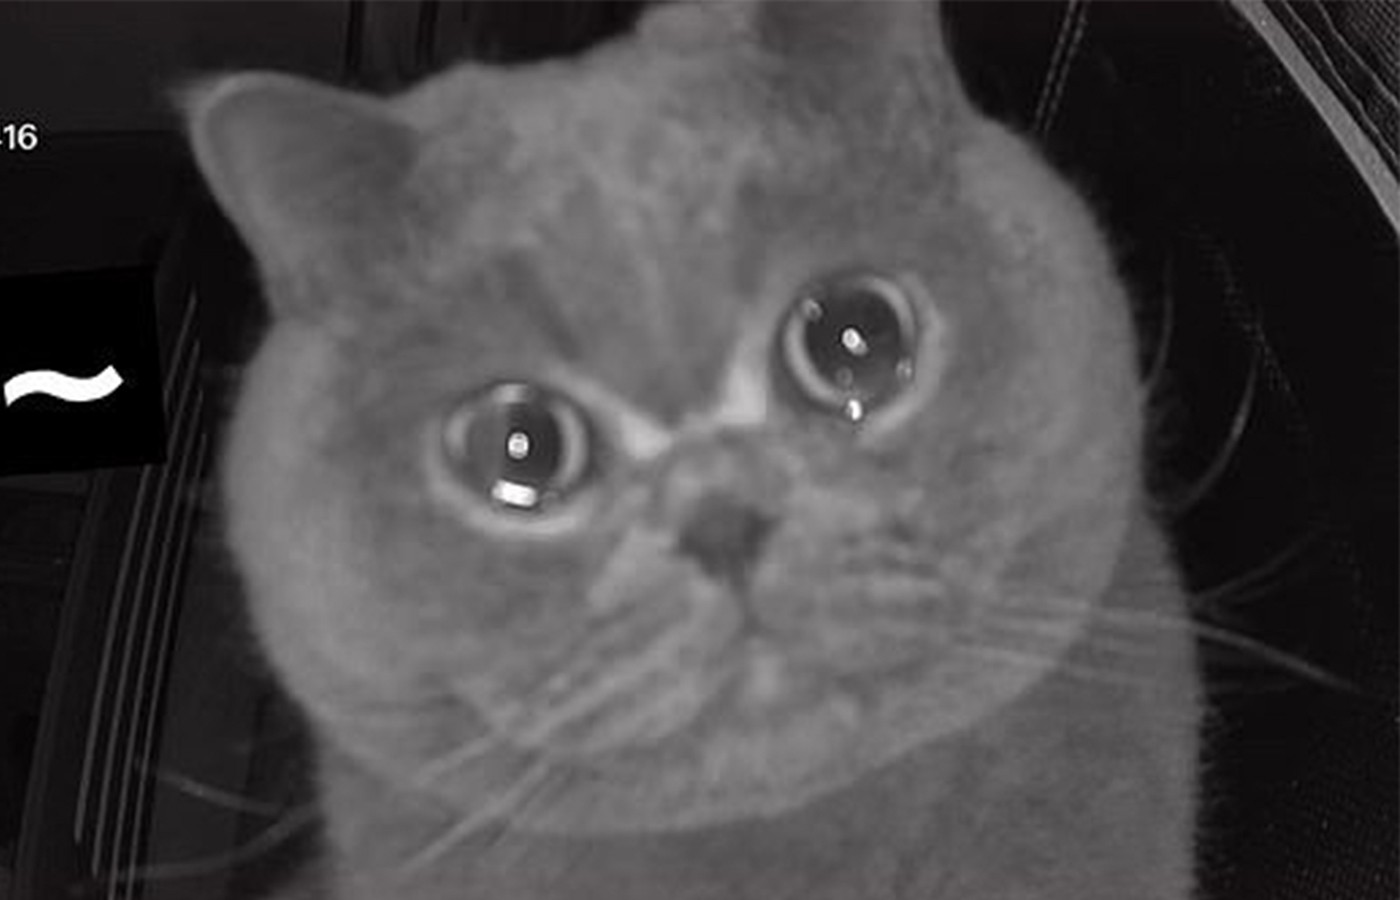 Ce chat pleure devant la caméra de surveillance à cause de l'absence de sa maîtresse